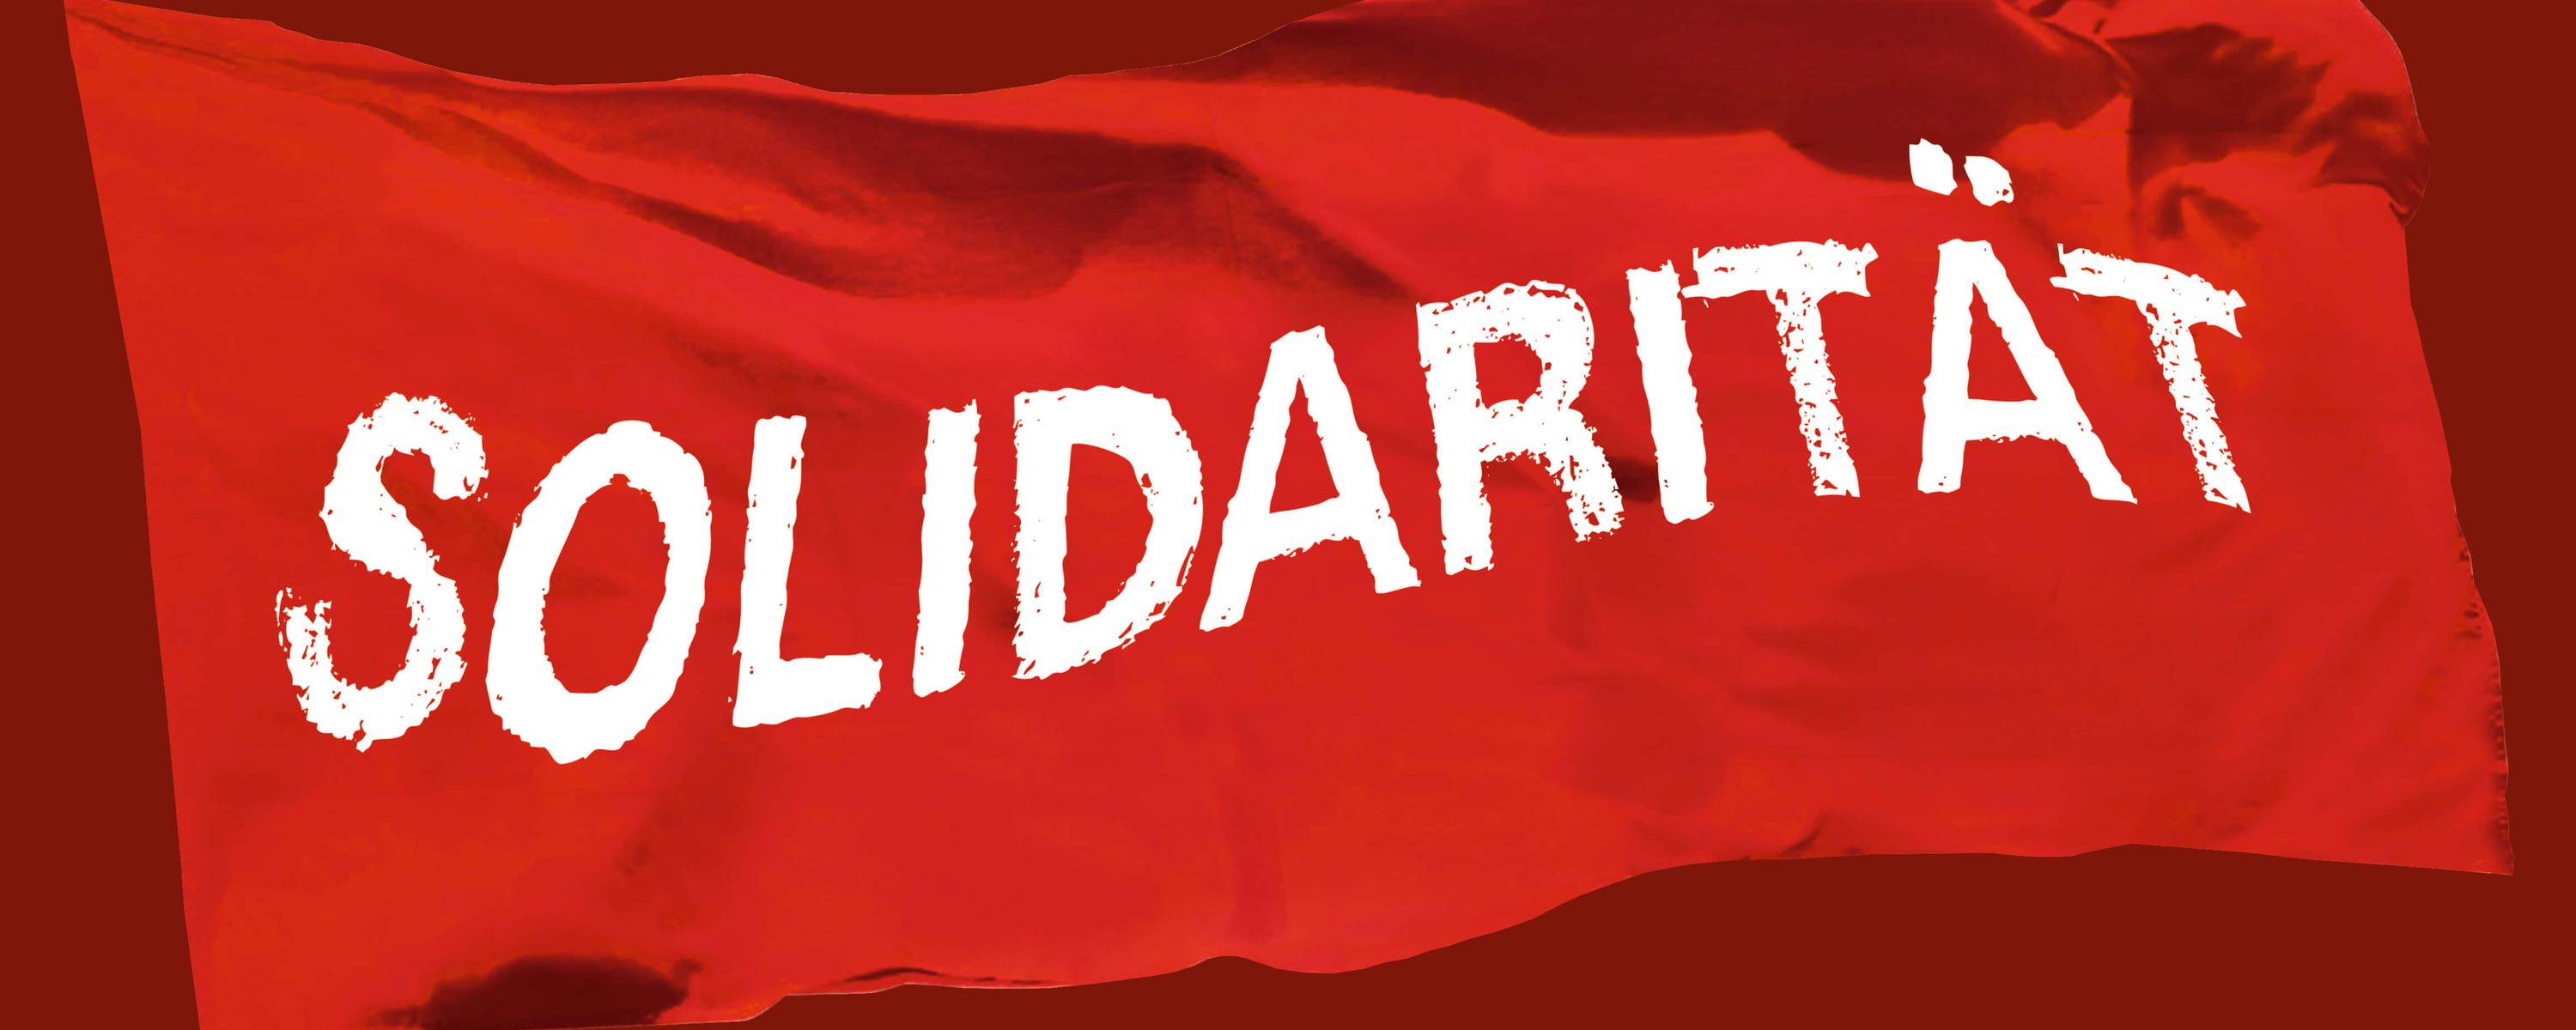 Grafik zur 100 Jahre Kampagne zeigt eine Rote Fahne mit der Auschrift »Solidarität«